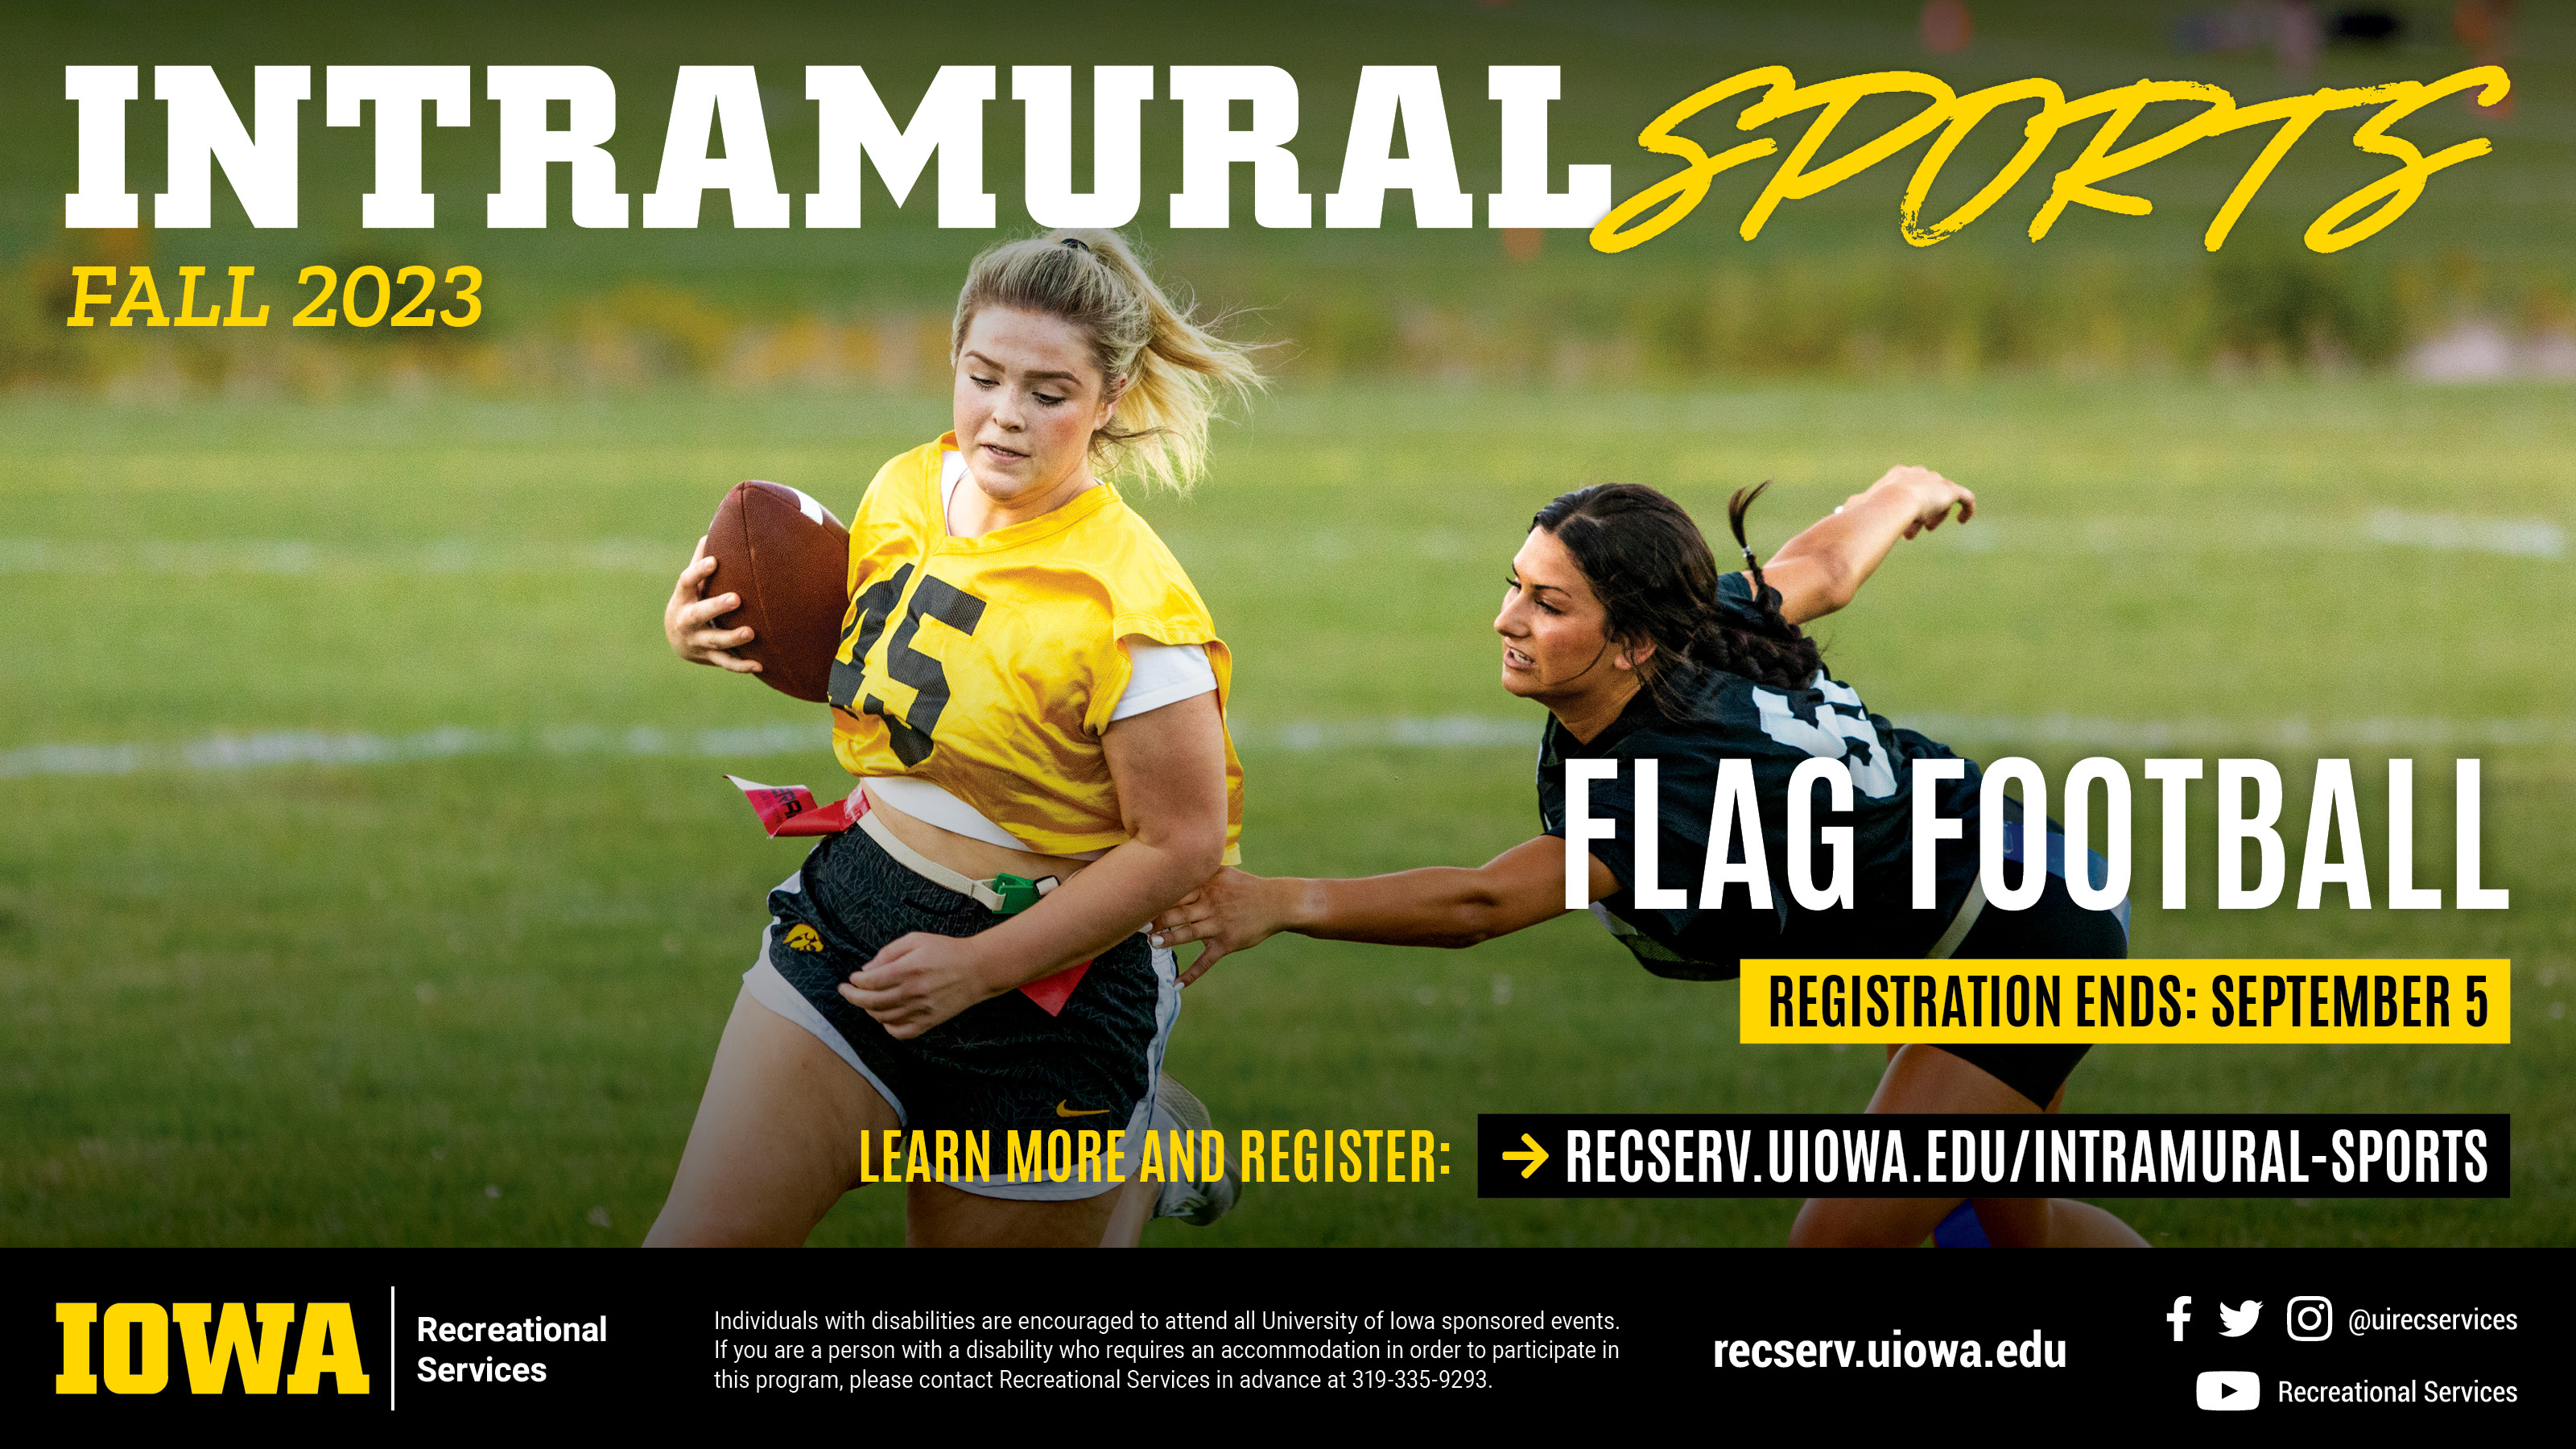 Flag footbal register by september 5